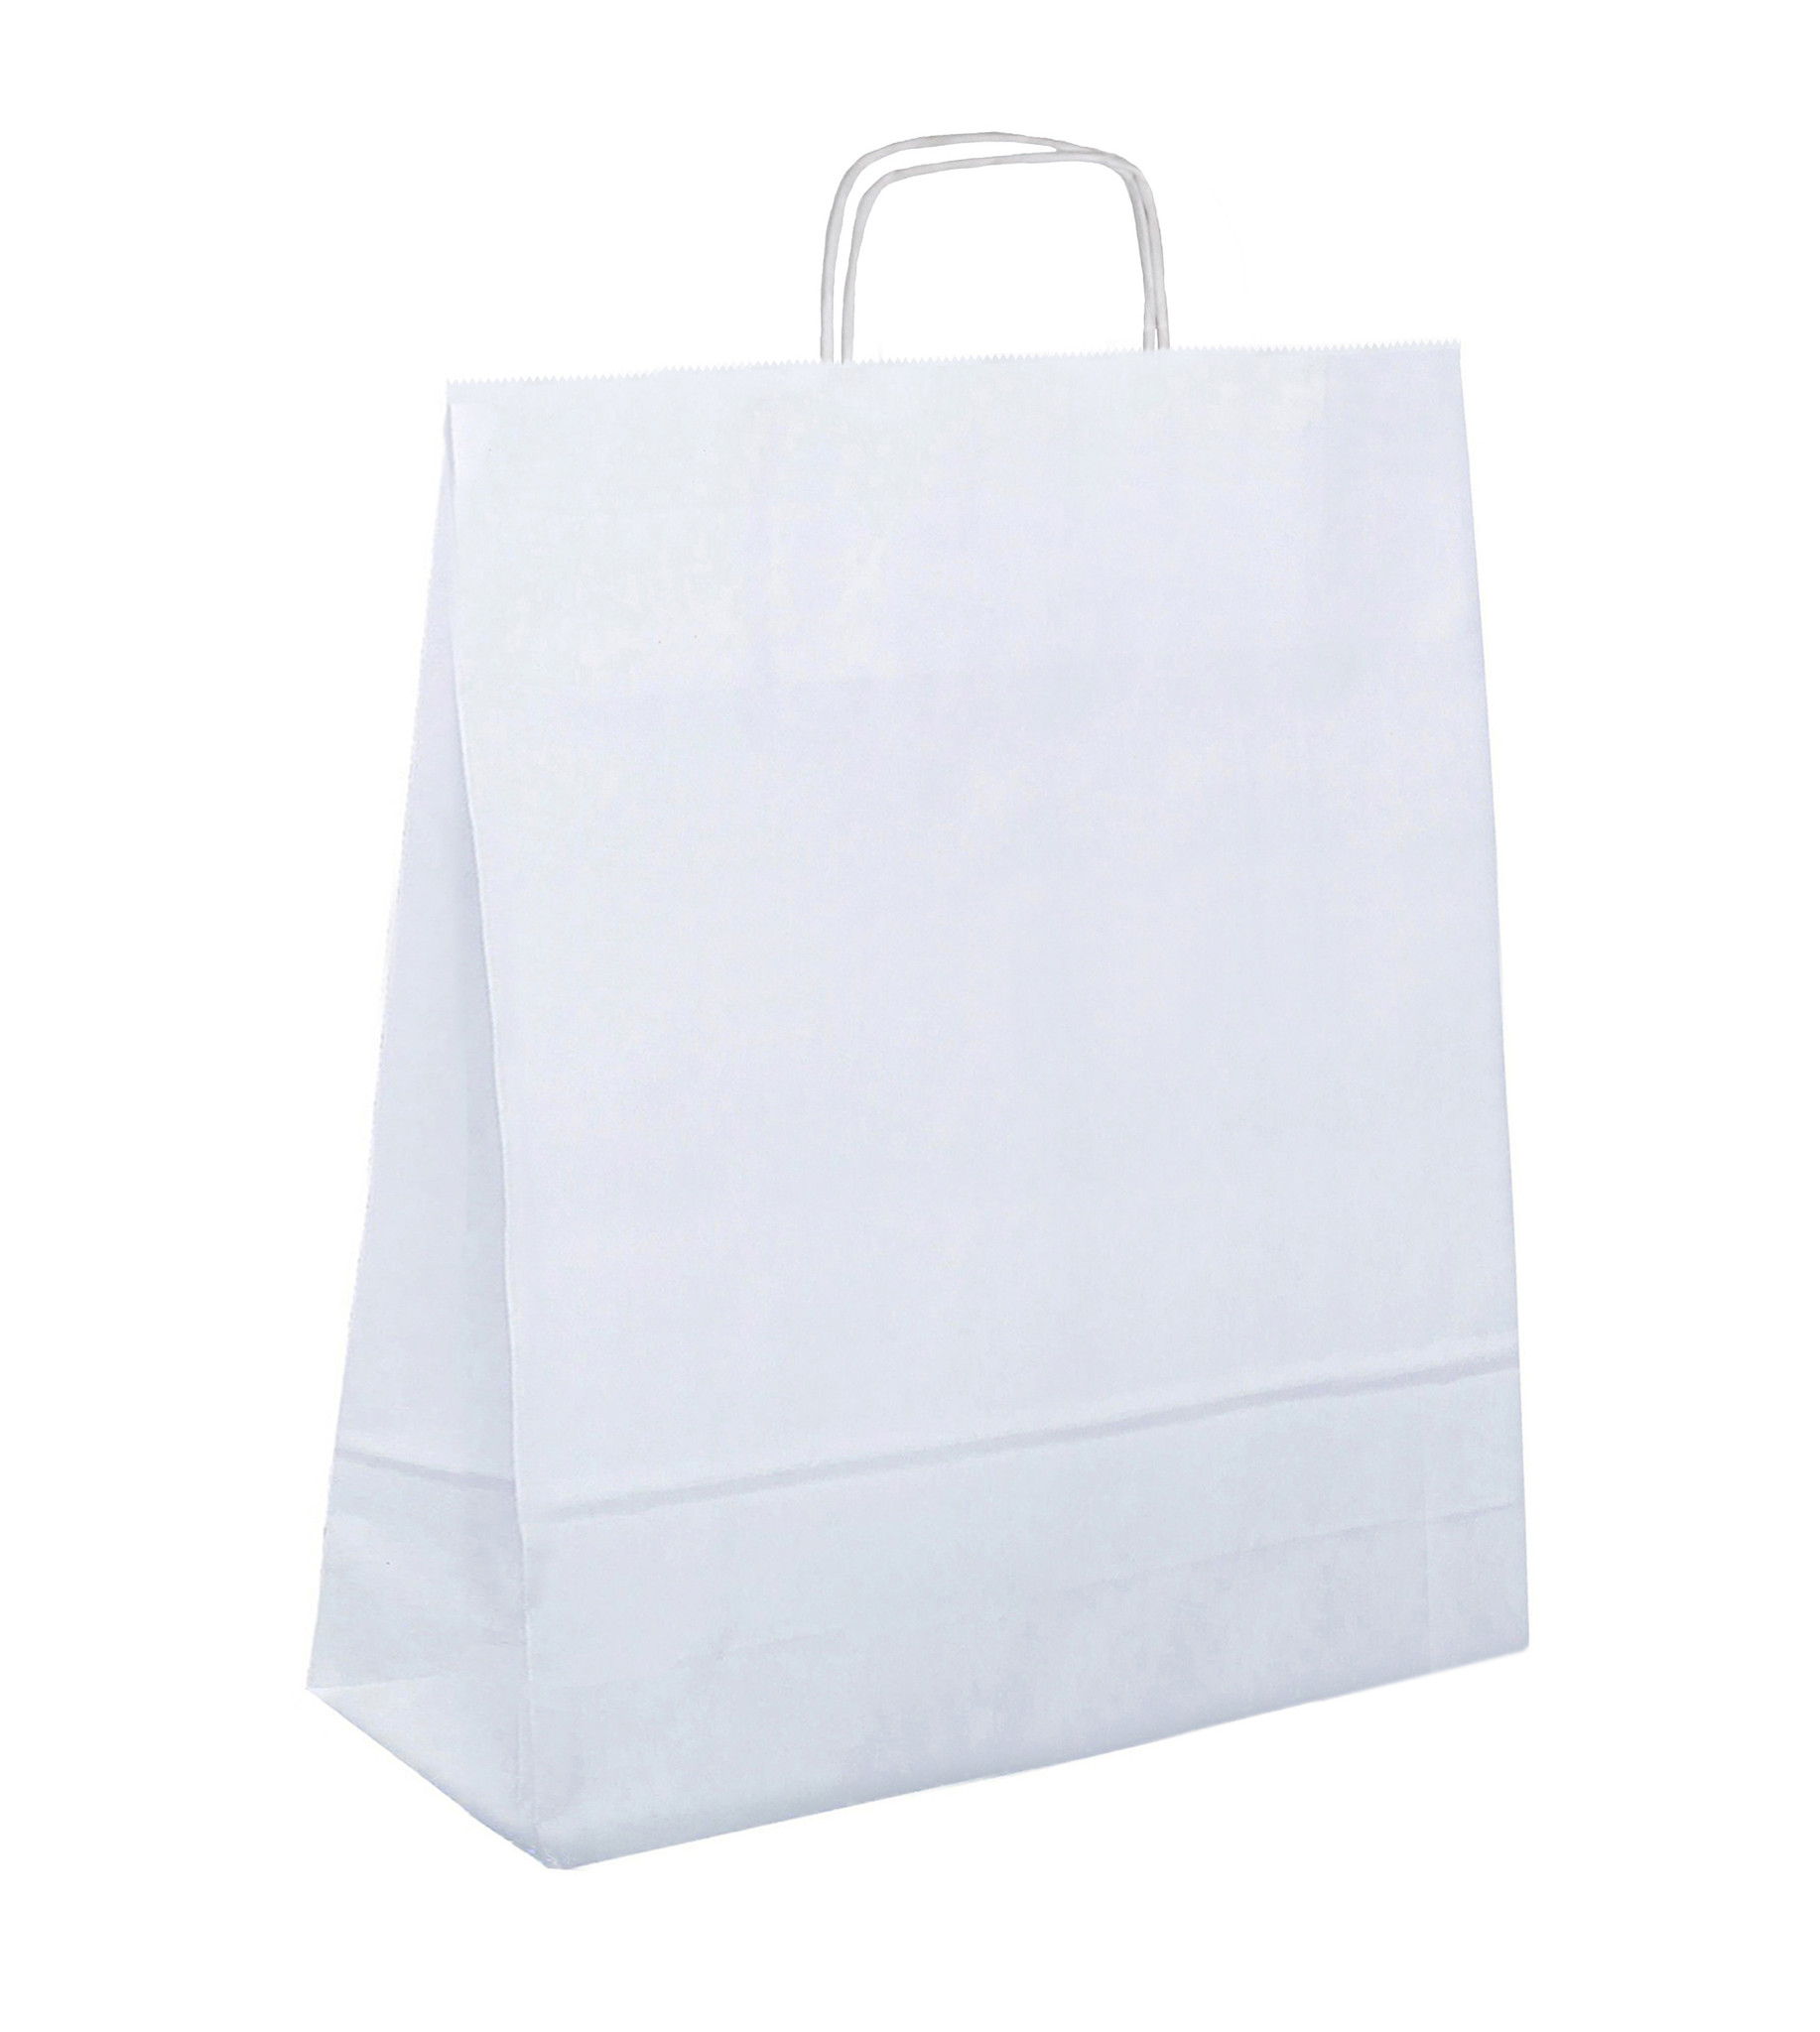 kogel Kwelling Spelen met Witte papieren tasjes kopen? Binnen 24 uur geleverd - VerpakkingenXL